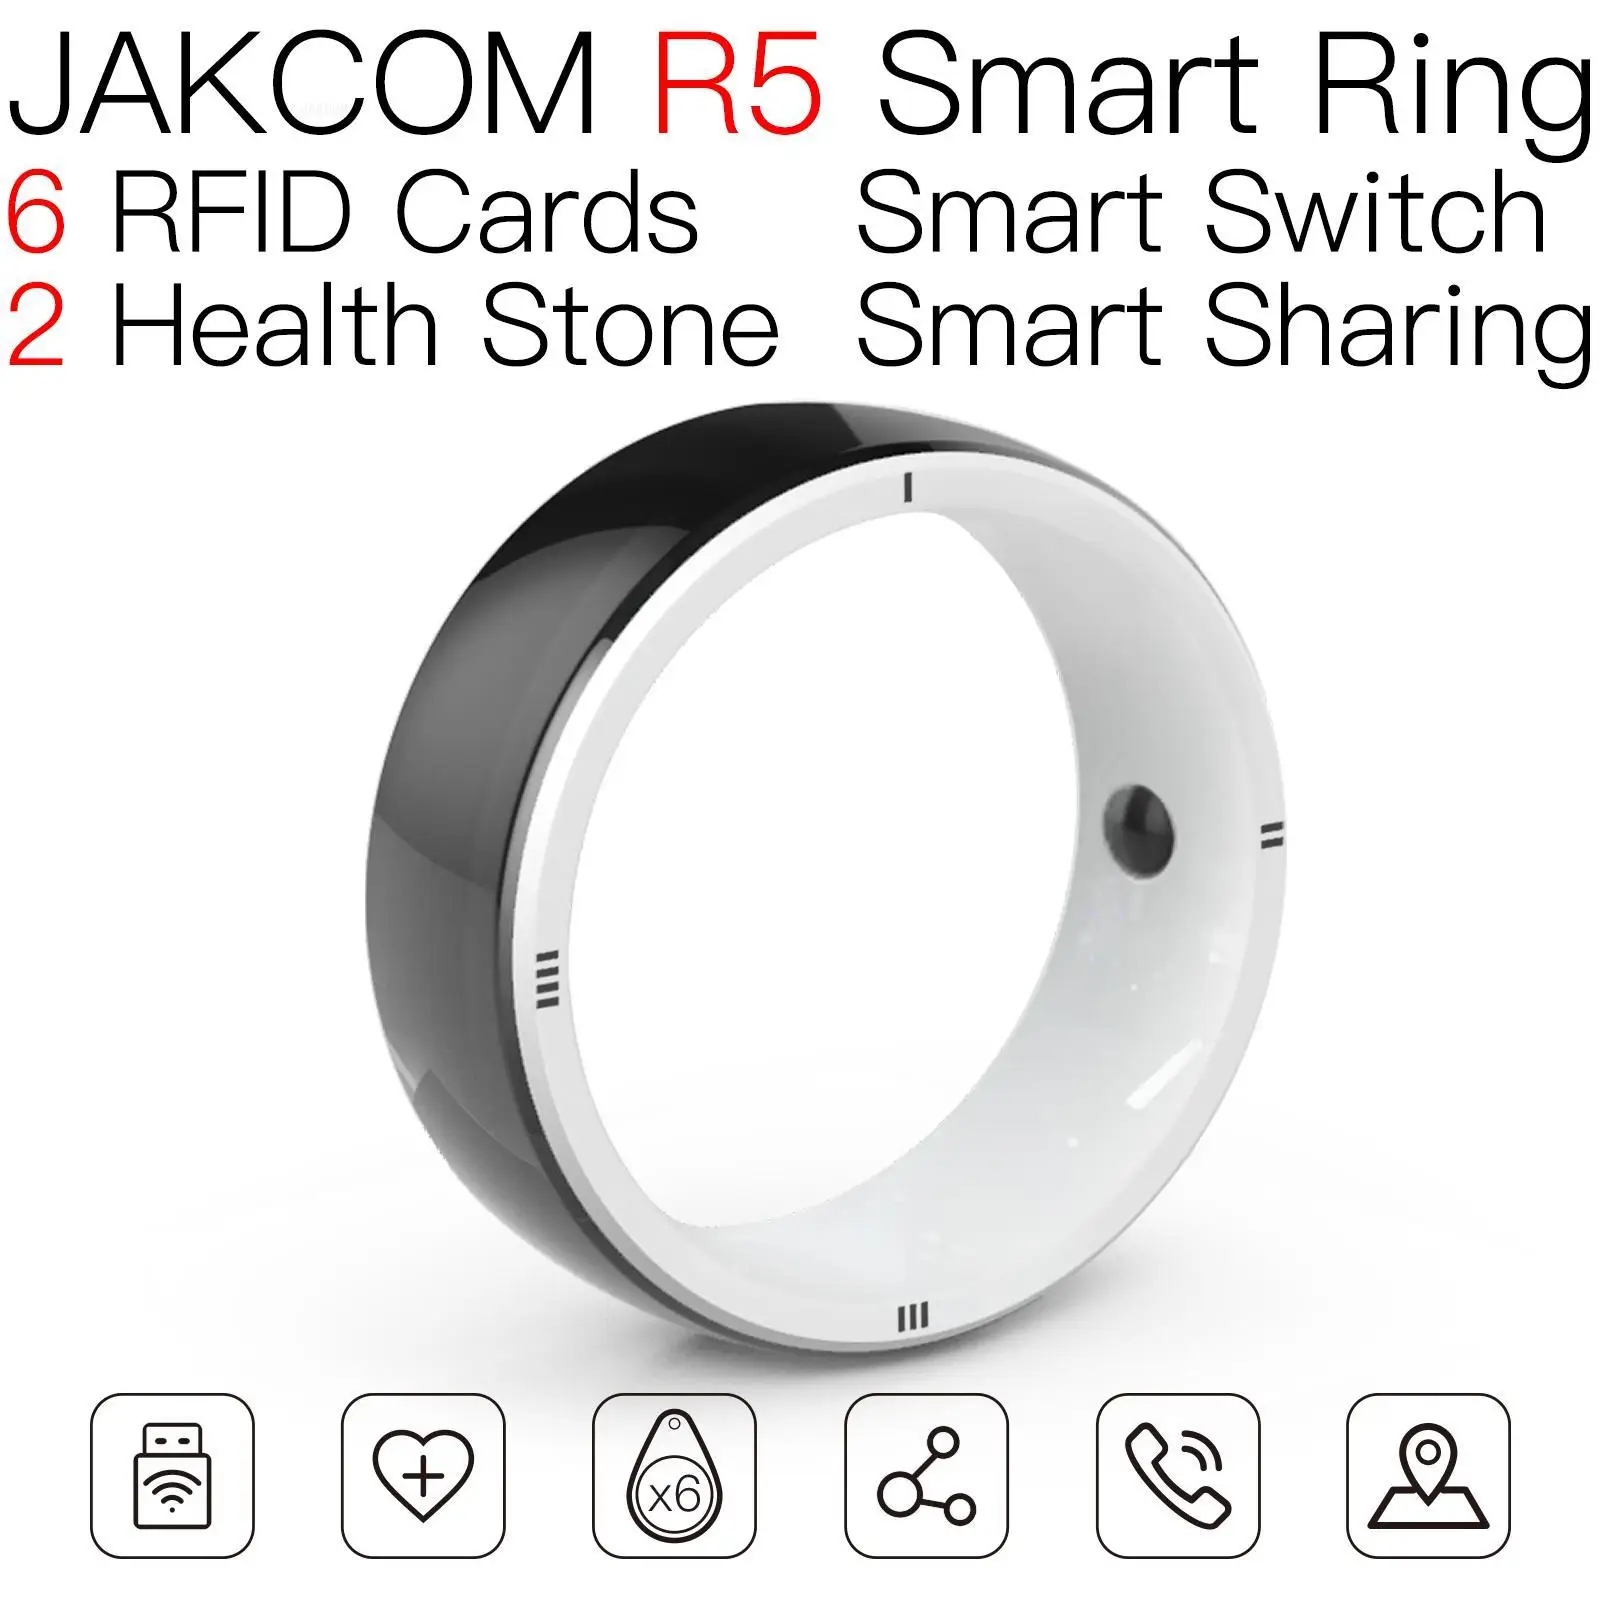 

Умное кольцо JAKCOM R5, лучший подарок с металлической брелоком для карт hf rfid и наклейками, перезаписываемое видео uhf prime, 1 год, Франция